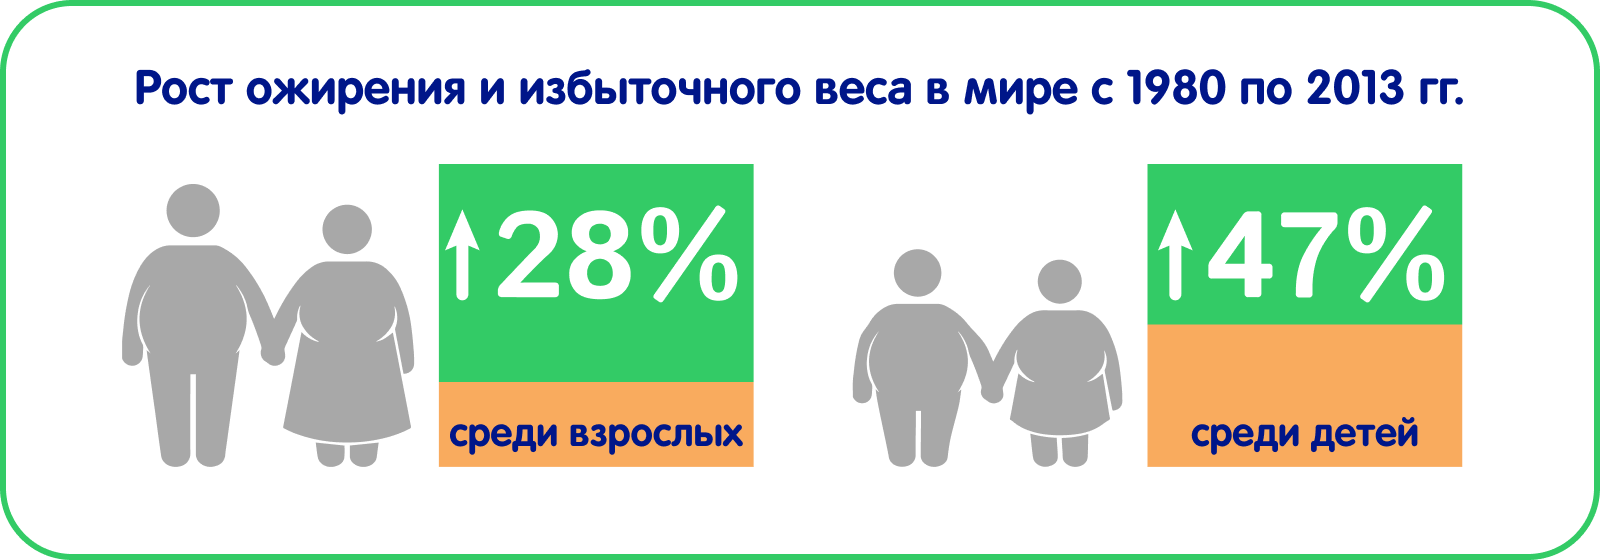 Рост ожирения и избыточного веса в мире с 1980 по 2013 гг.